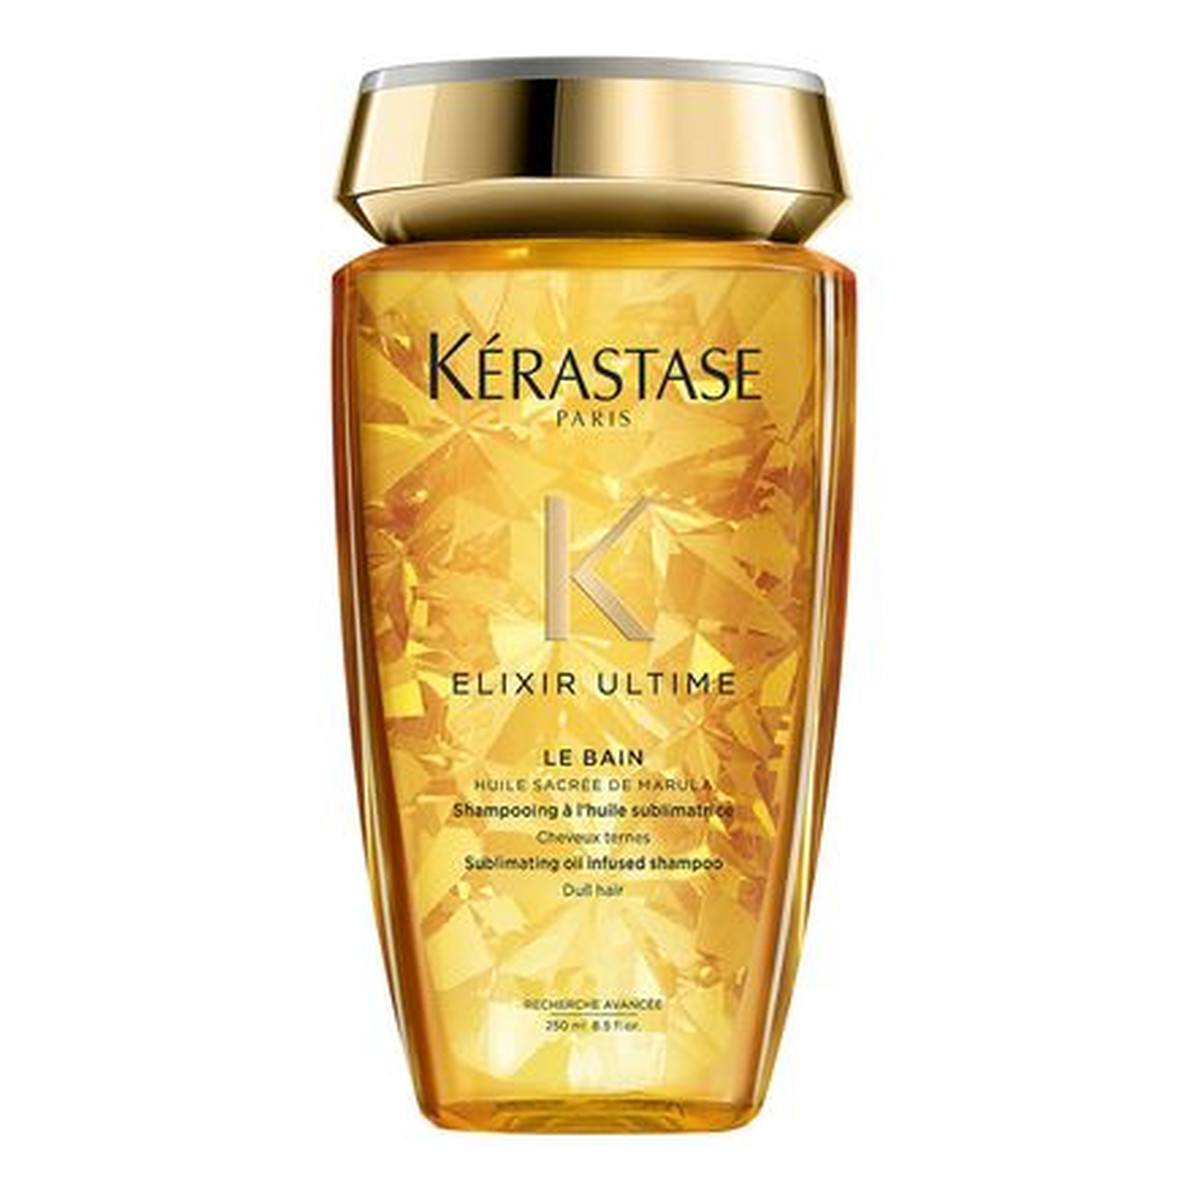 Kerastase Elixir Ultime Shampoo oczyszczający szampon do włosów wzbogacony olejem marula 250ml